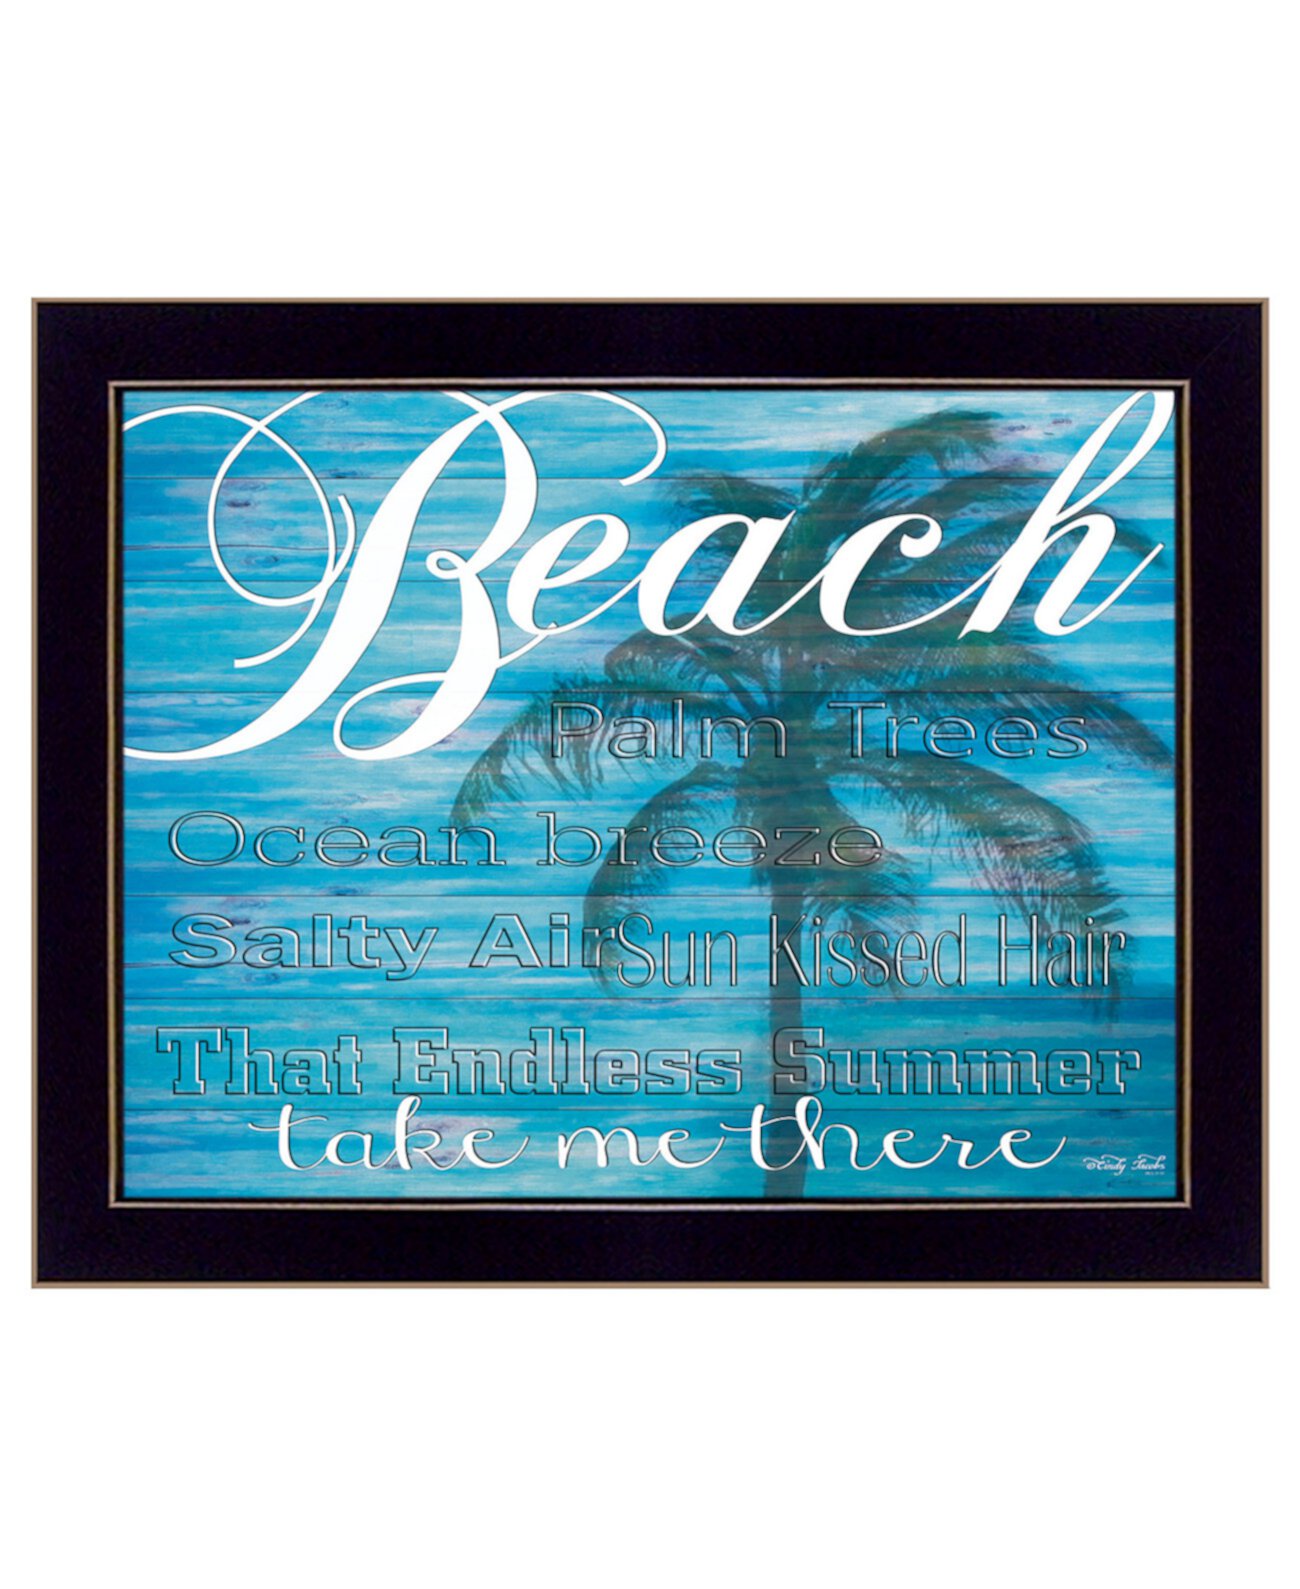 Пляж - Отведи меня туда Синди Джейкобс, настенное искусство с принтом, готово к развешиванию, черная рамка, 18 "x 14" Trendy Décor 4U